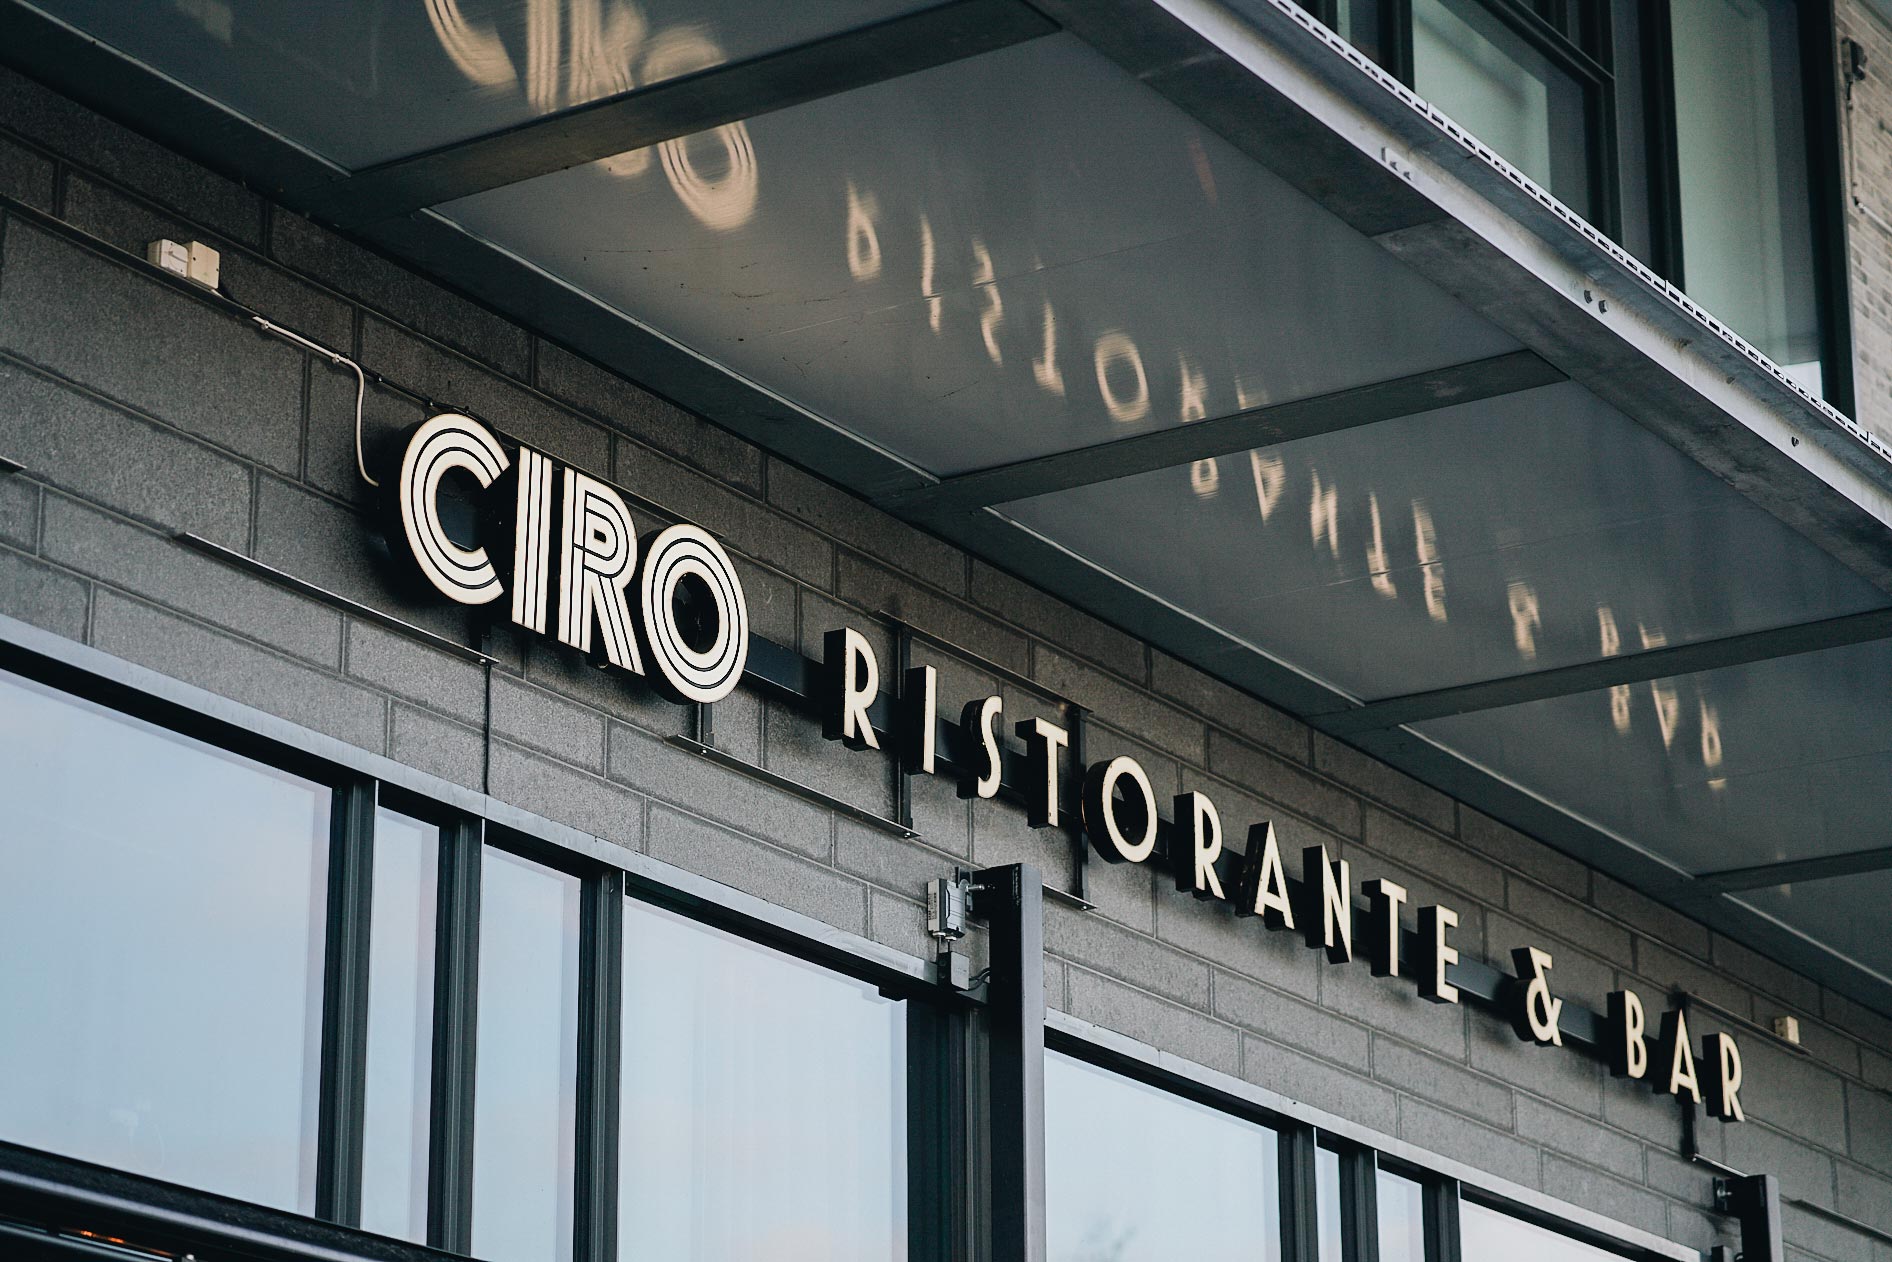 Ciro - Logotyp på fasad